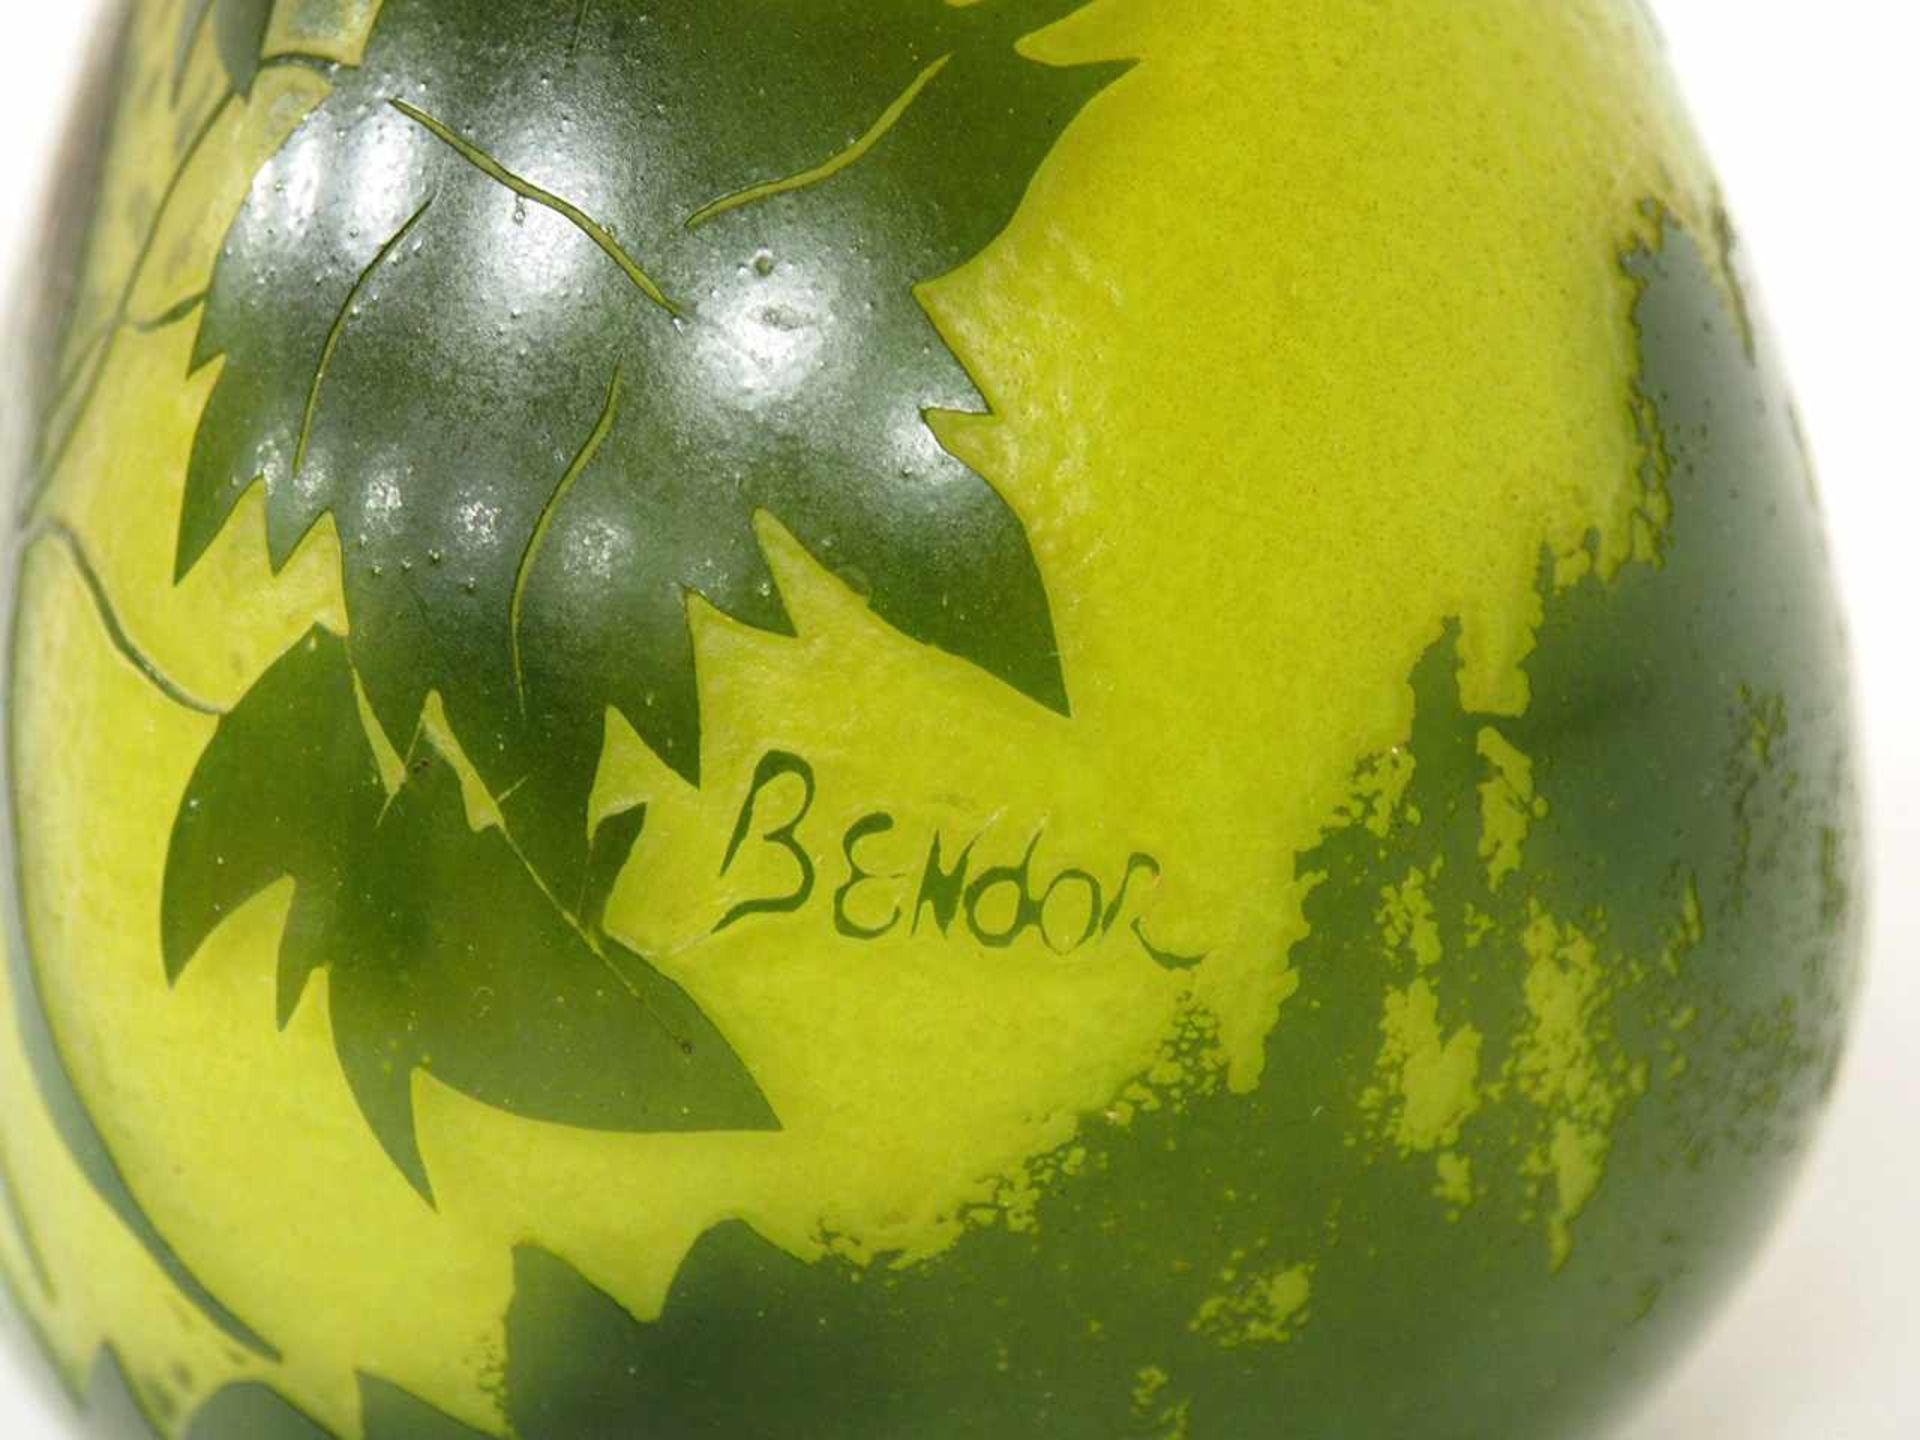 Langhalsvasegrünes Glas mit Überfang, Ätzdekor "Vogelpaar und Ranken", signiert Bendor, - Bild 2 aus 2